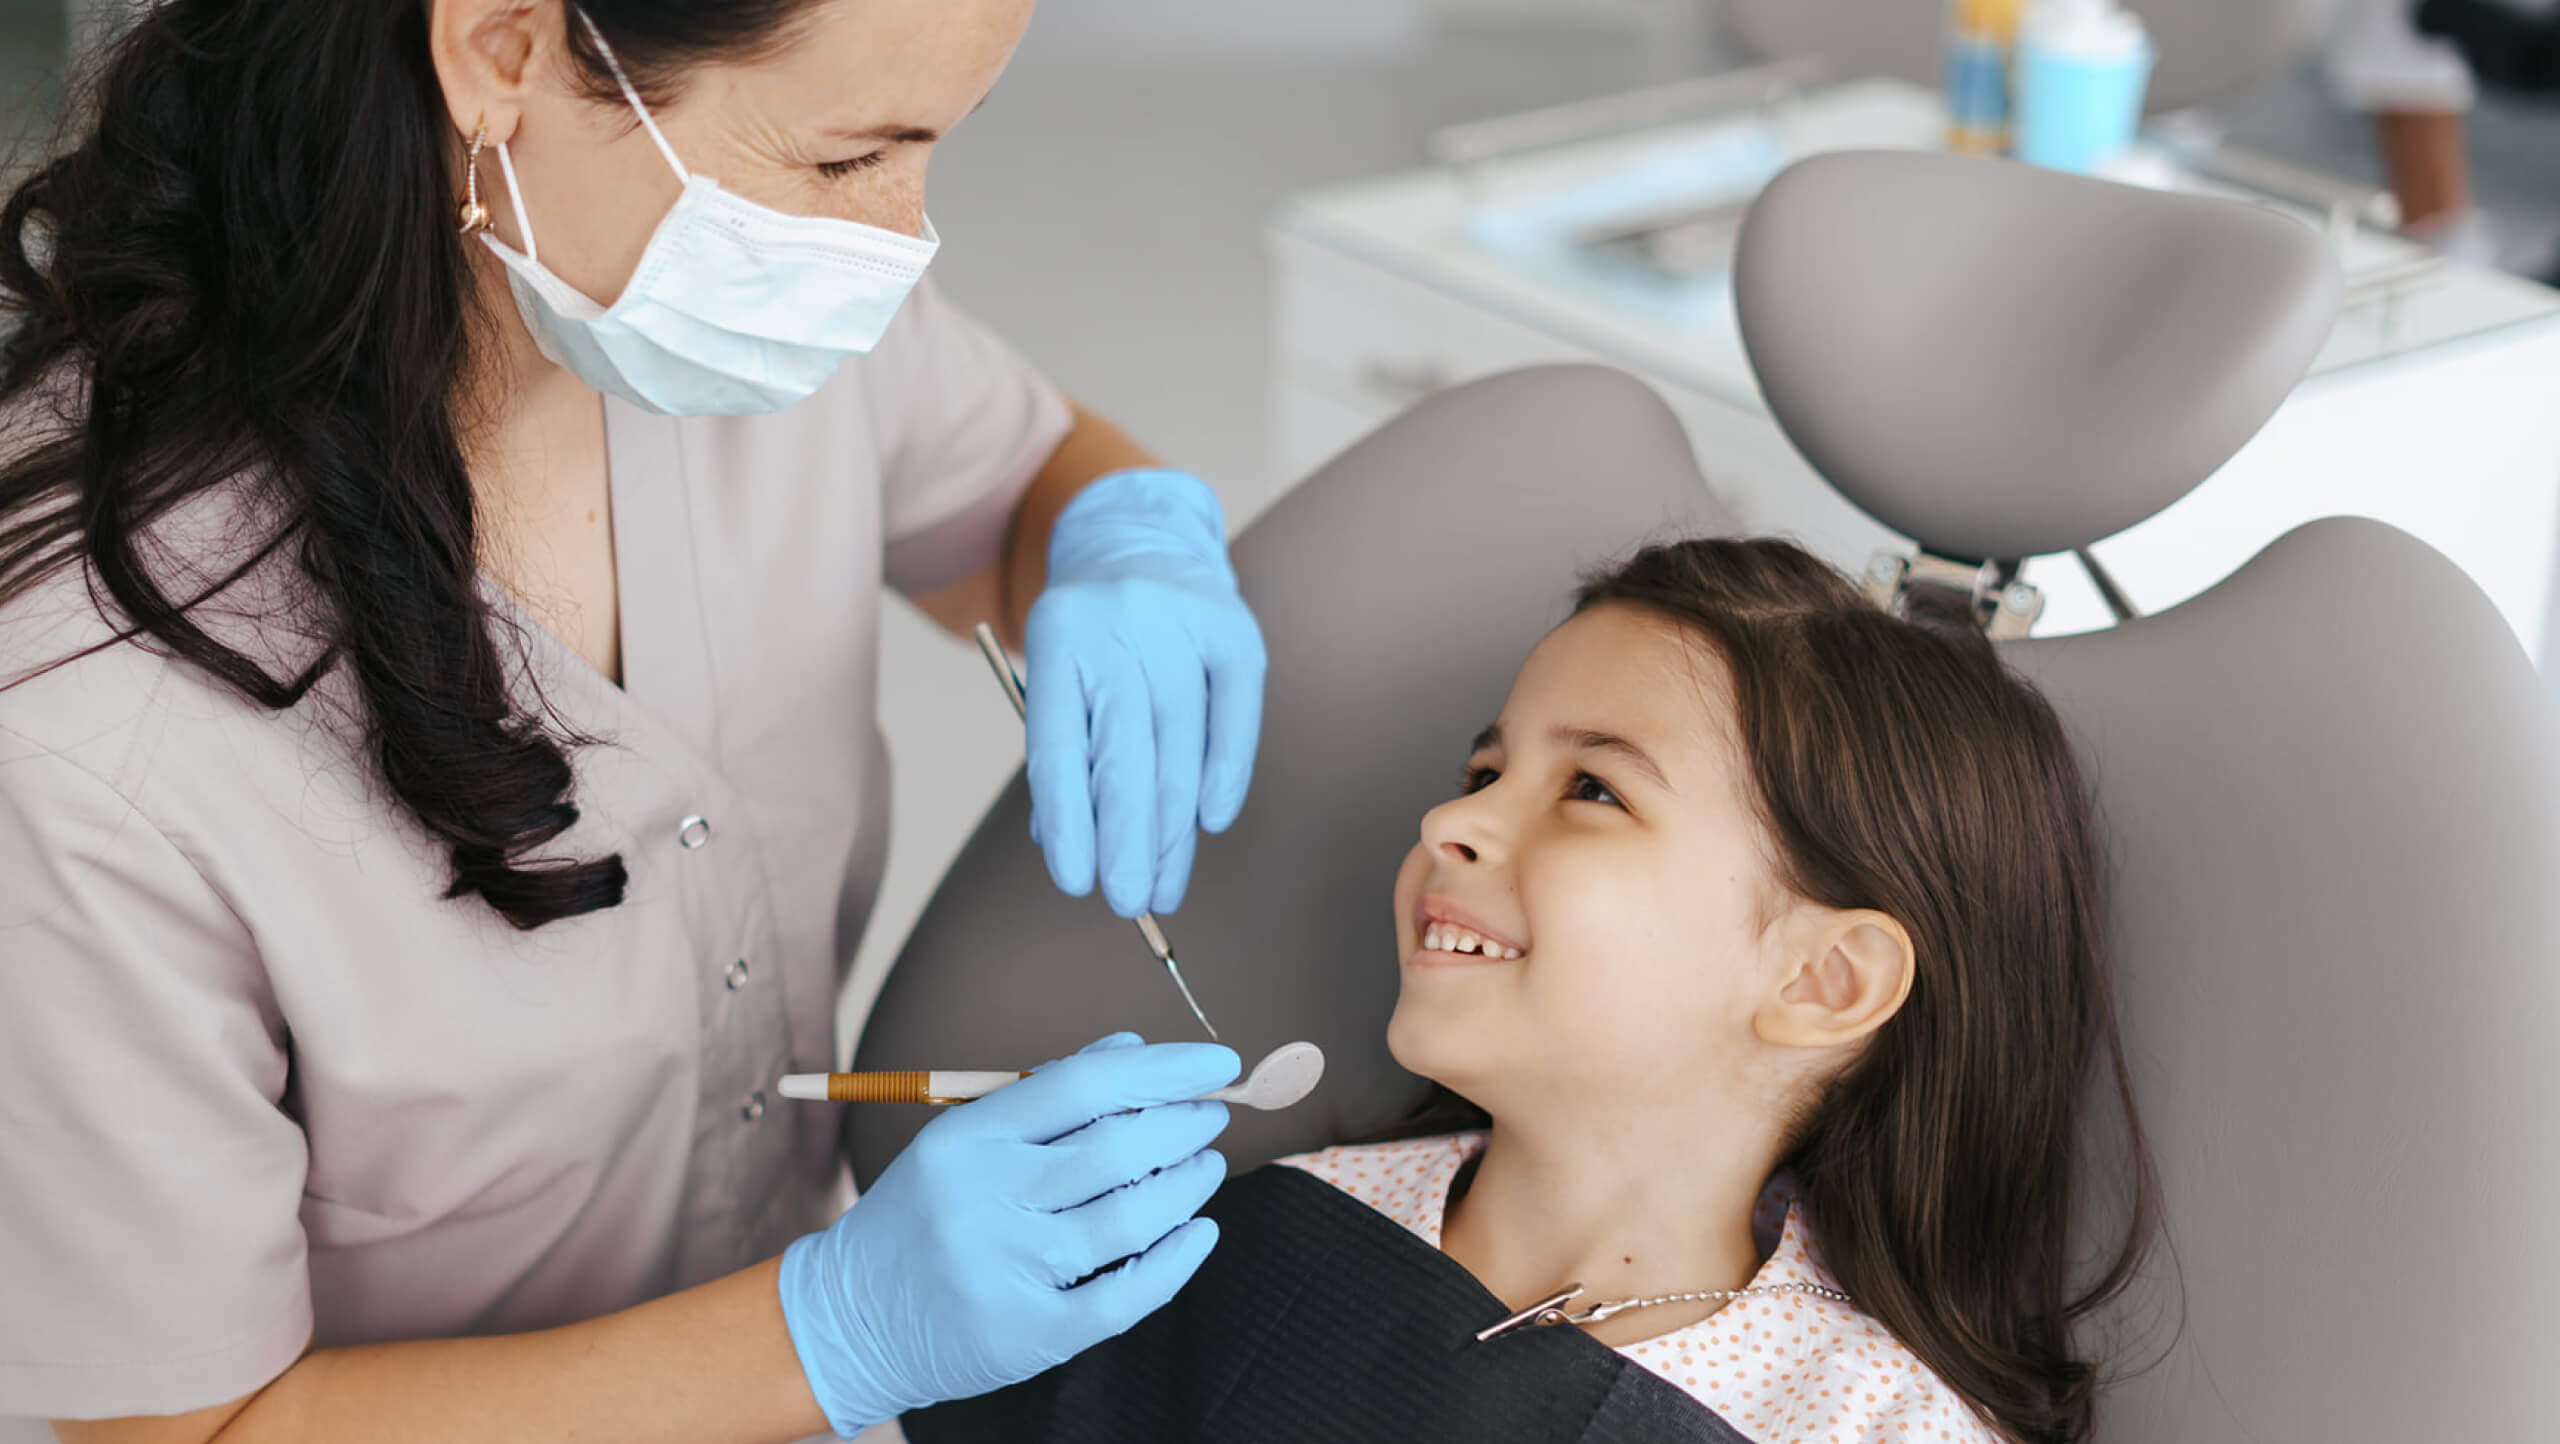 Ingrijire dentara completa pentru fiecare membru al familiei tale, de la cei mici la adulti.